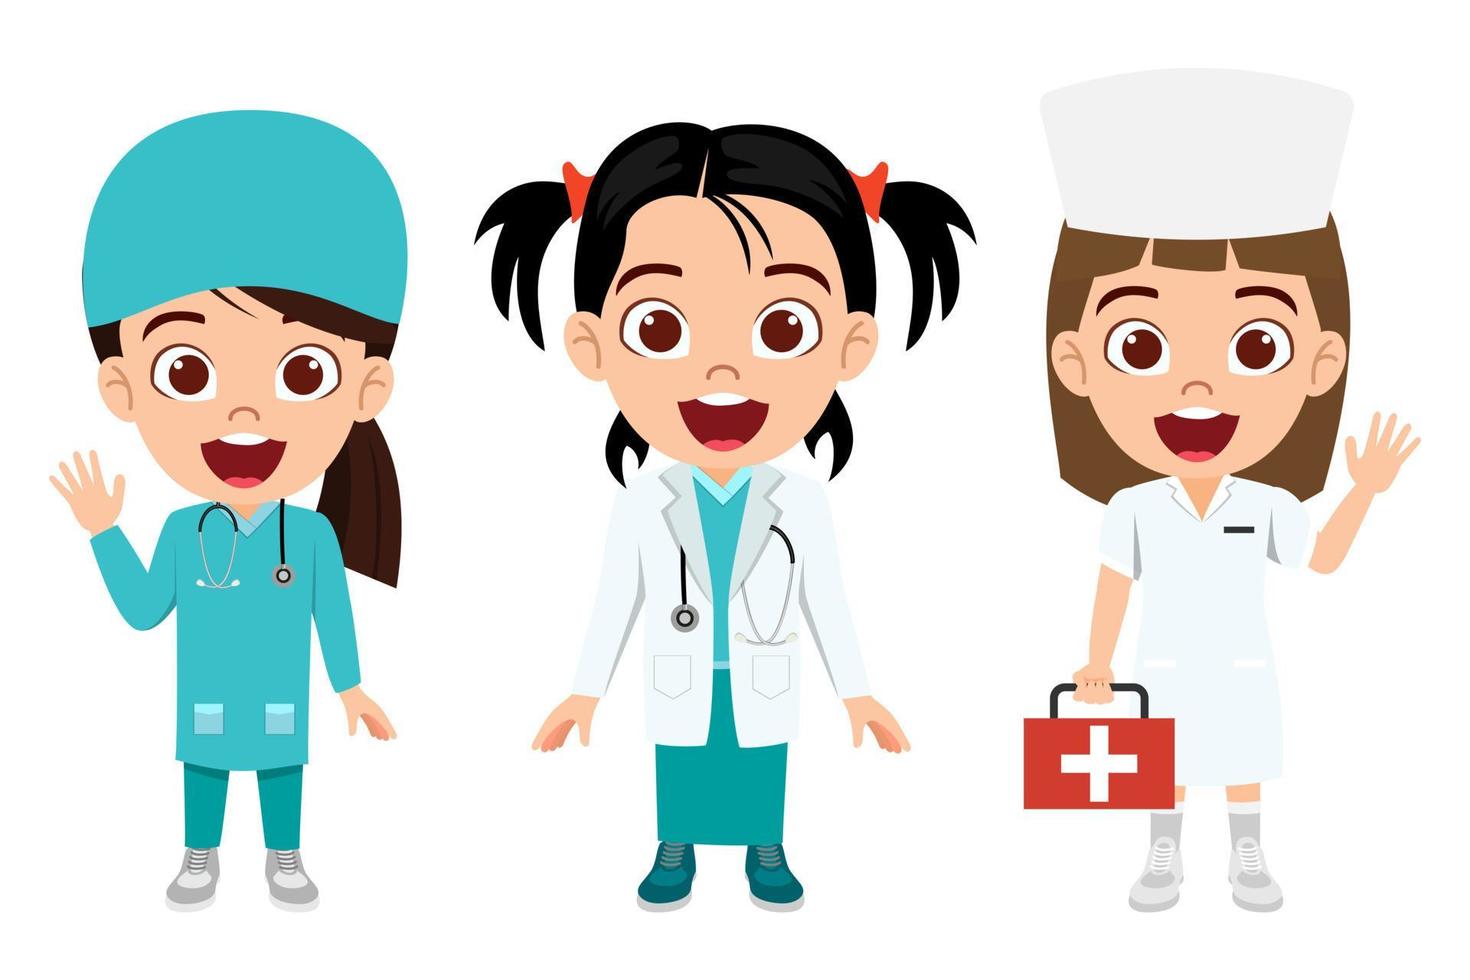 criança linda garota médica enfermeira personagem vestindo roupa de médico enfermeira segurando kit médico acenando vetor